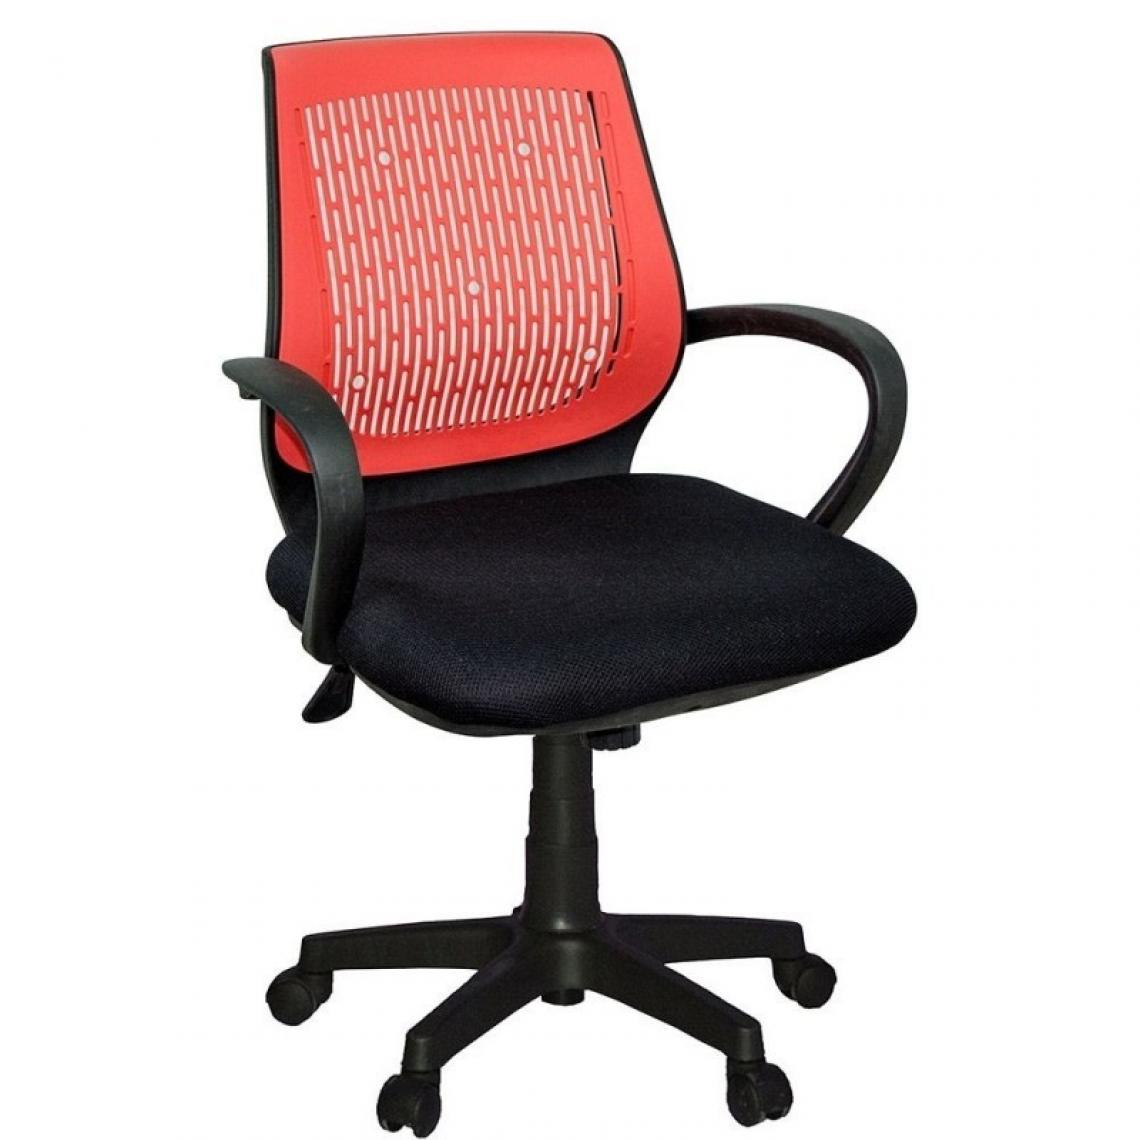 Webmarketpoint - Chaise de bureau en tissu et microperforé Noir Rouge 61x48x h99 cm - Bureaux